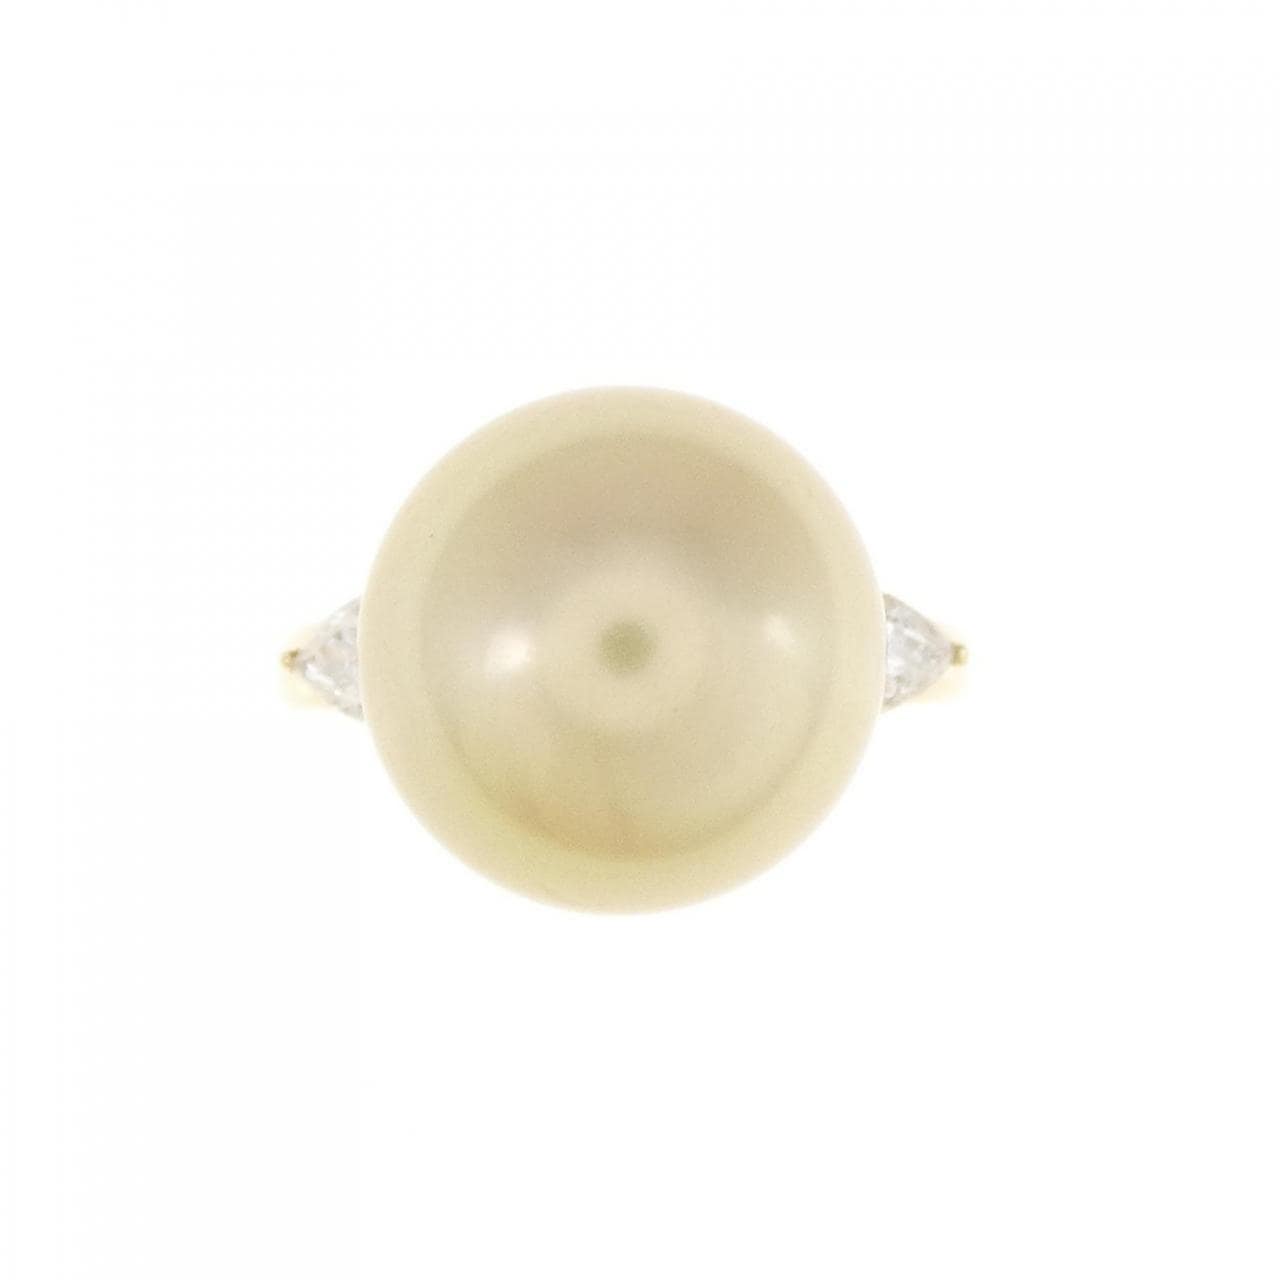 Tasaki White Butterfly Pearl ring 12.2mm